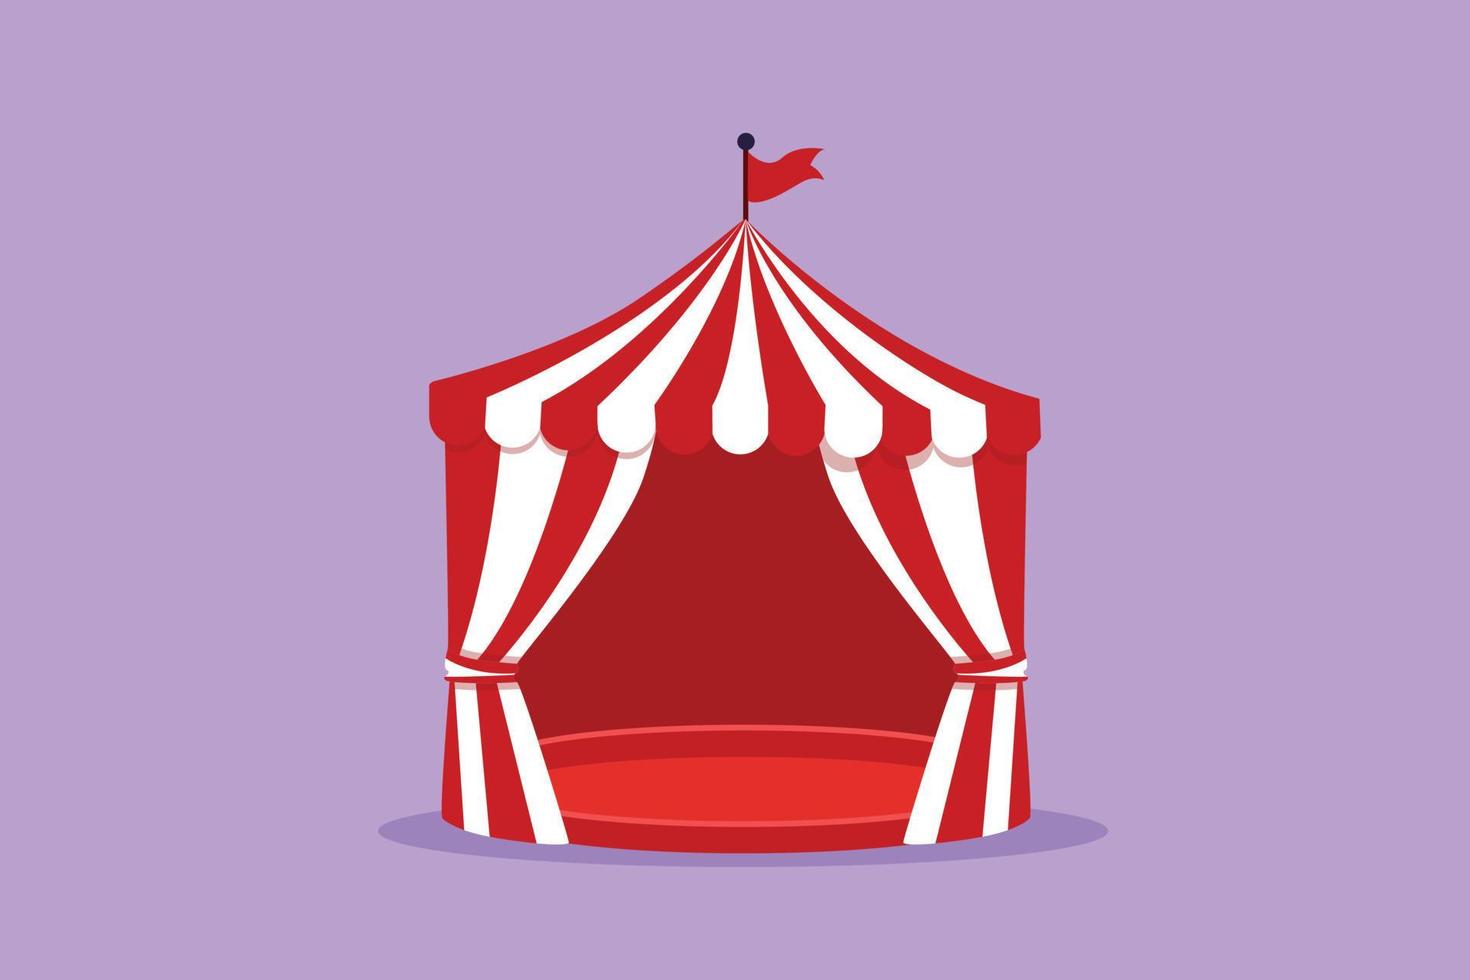 design plano gráfico desenhando tenda de circo em forma de pentágono com listras e bandeira no topo. onde palhaços, mágicos, animais se apresentam. entretenimento de negócios de sucesso. ilustração vetorial de estilo cartoon vetor